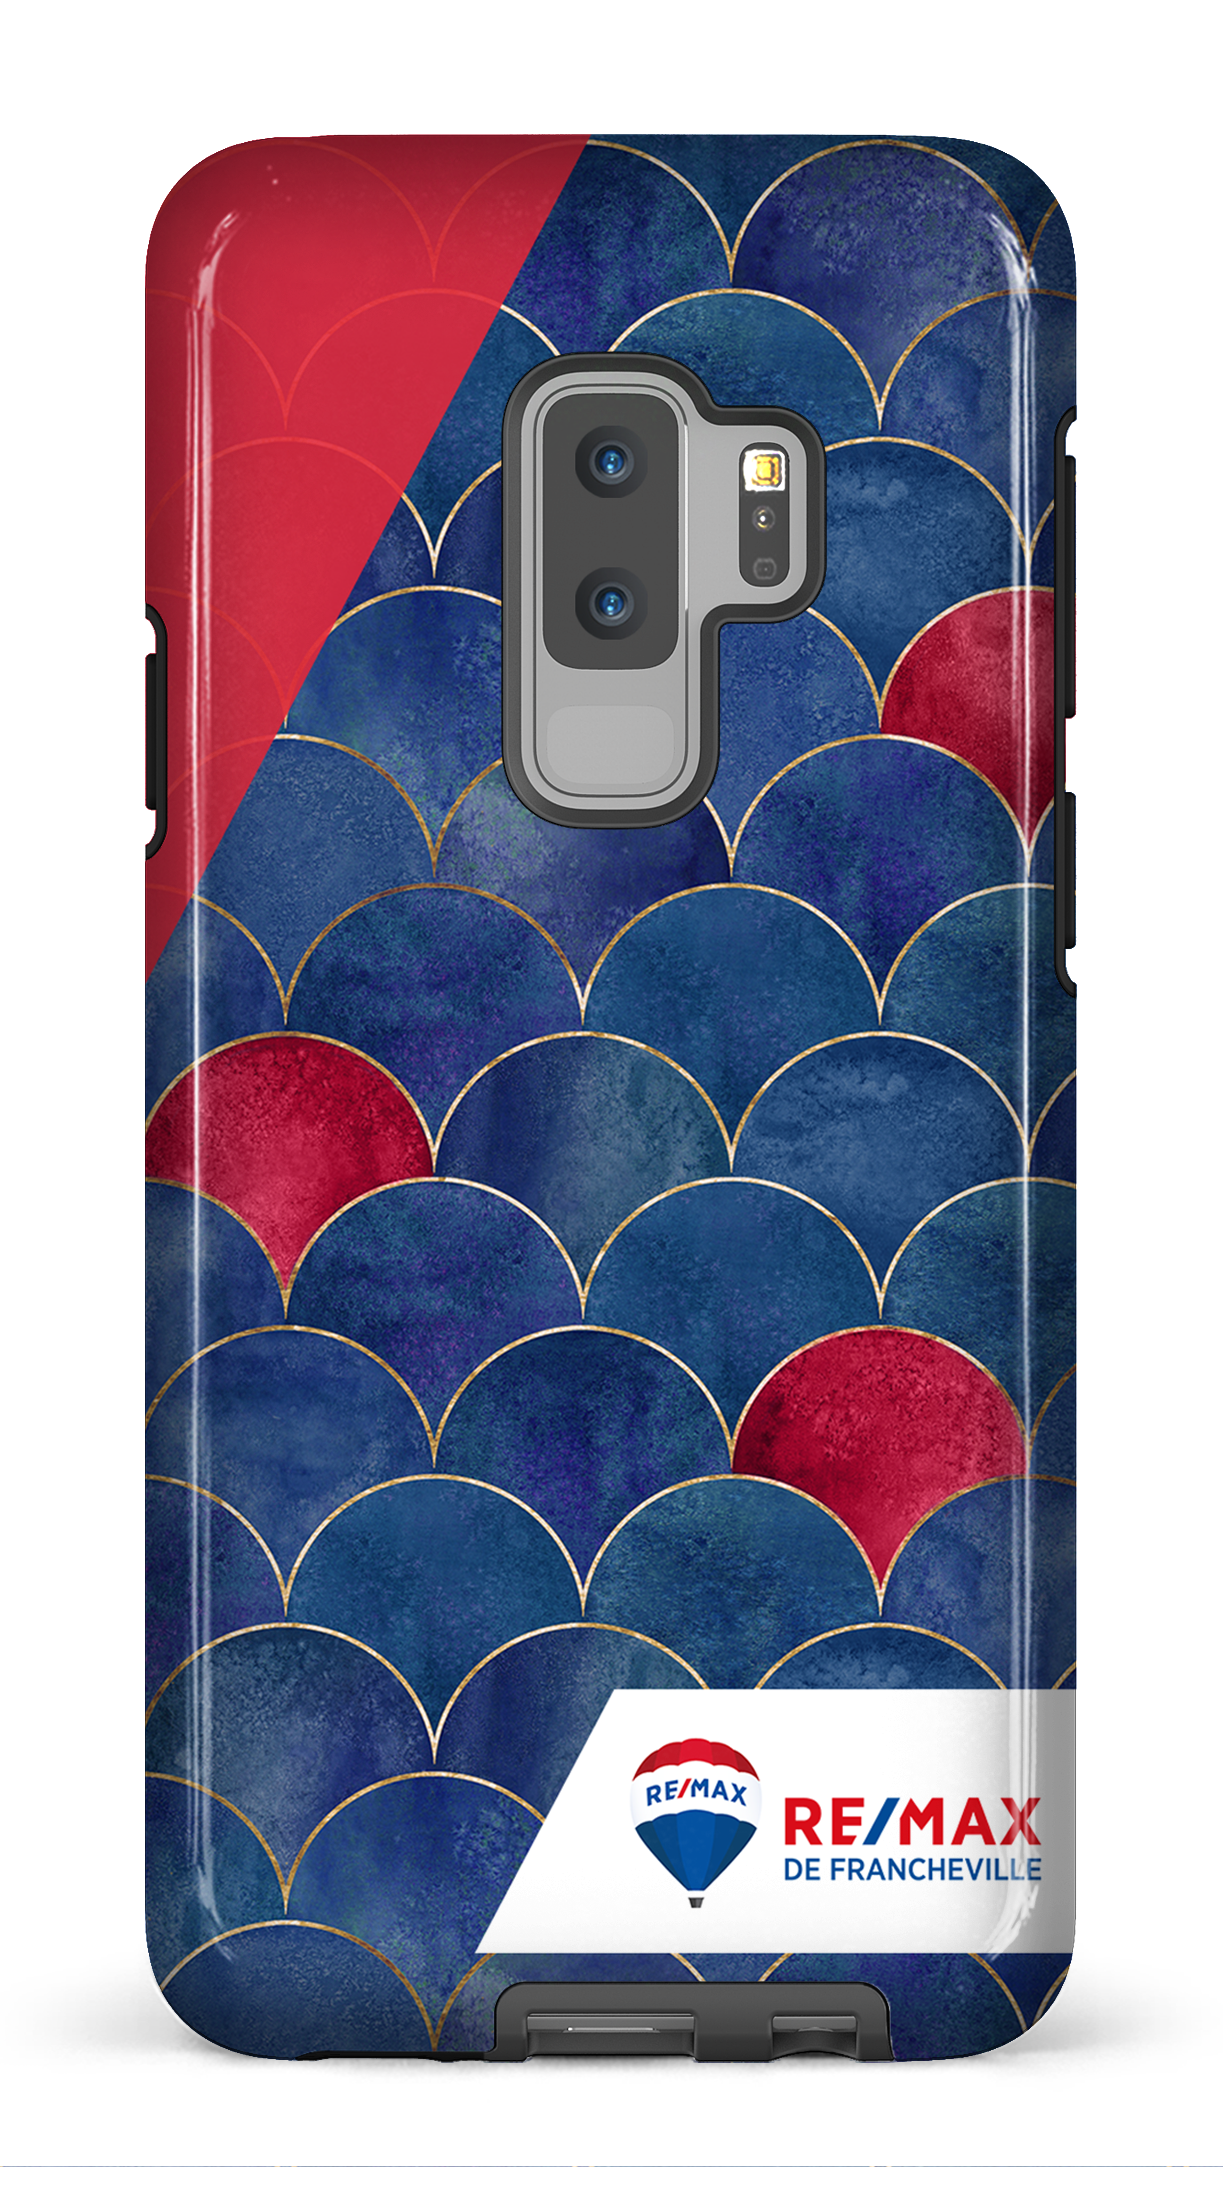 Écailles bicolores de Francheville - Galaxy S9 Plus